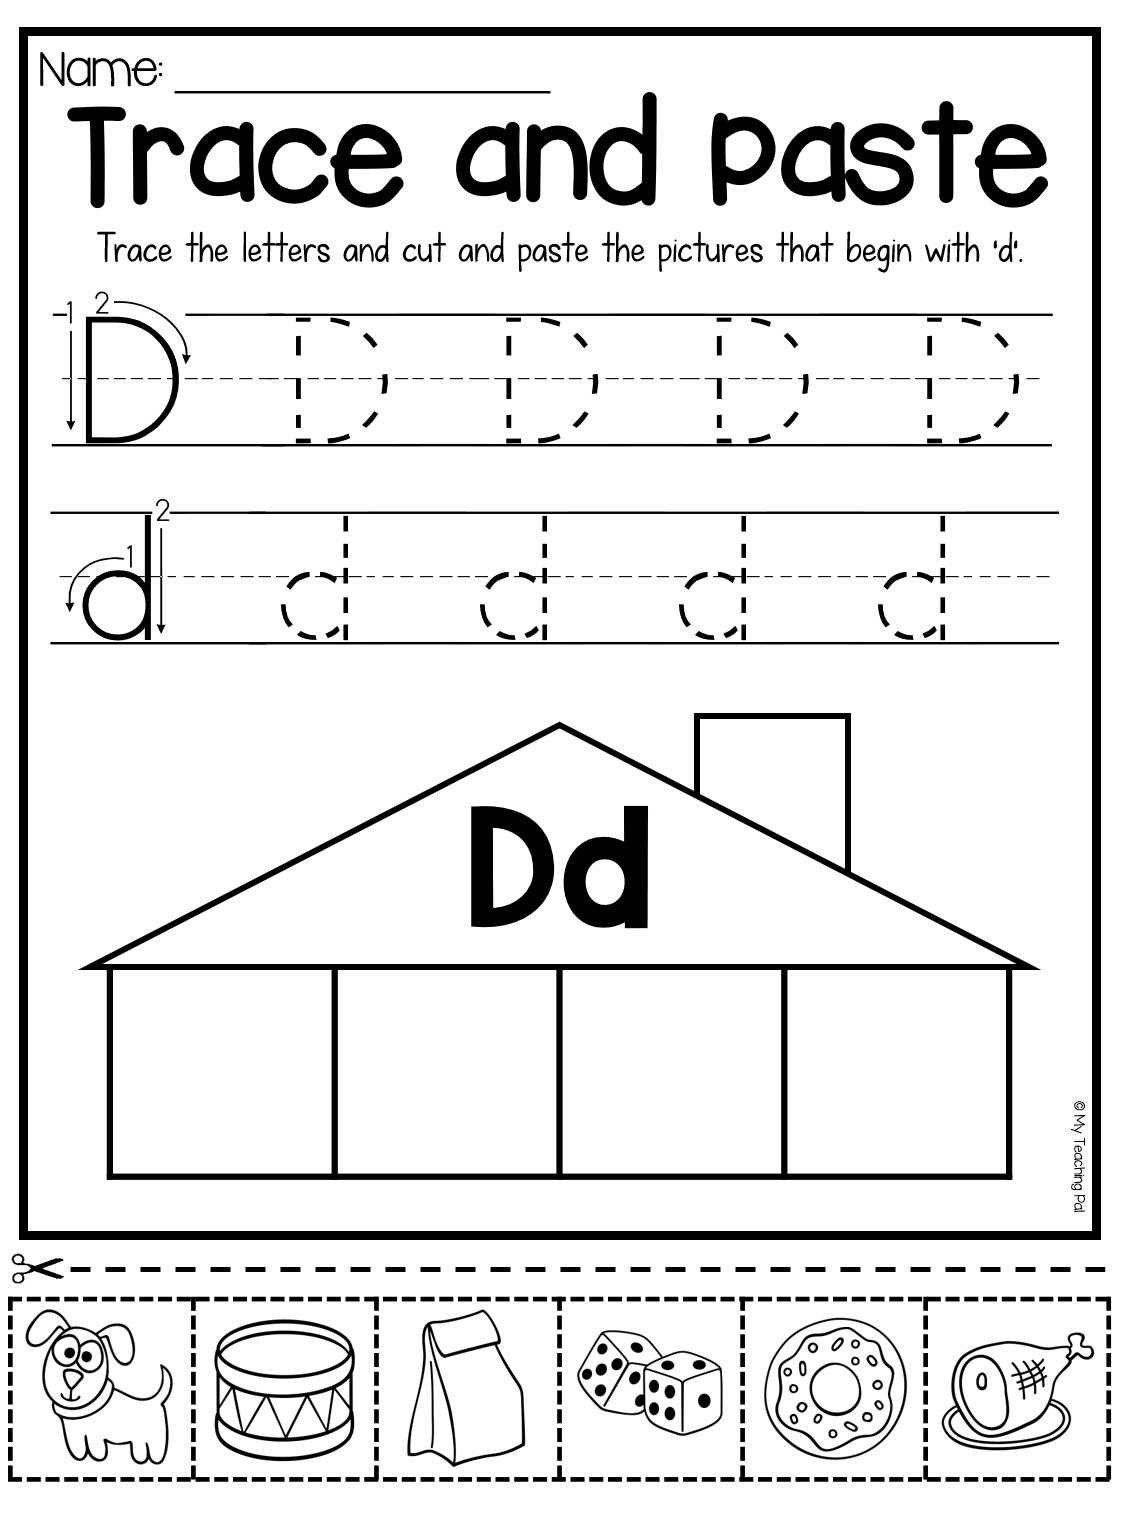 Letter D Worksheets For Learning. Letter D Worksheets for Letter D Worksheets For 2 Year Olds